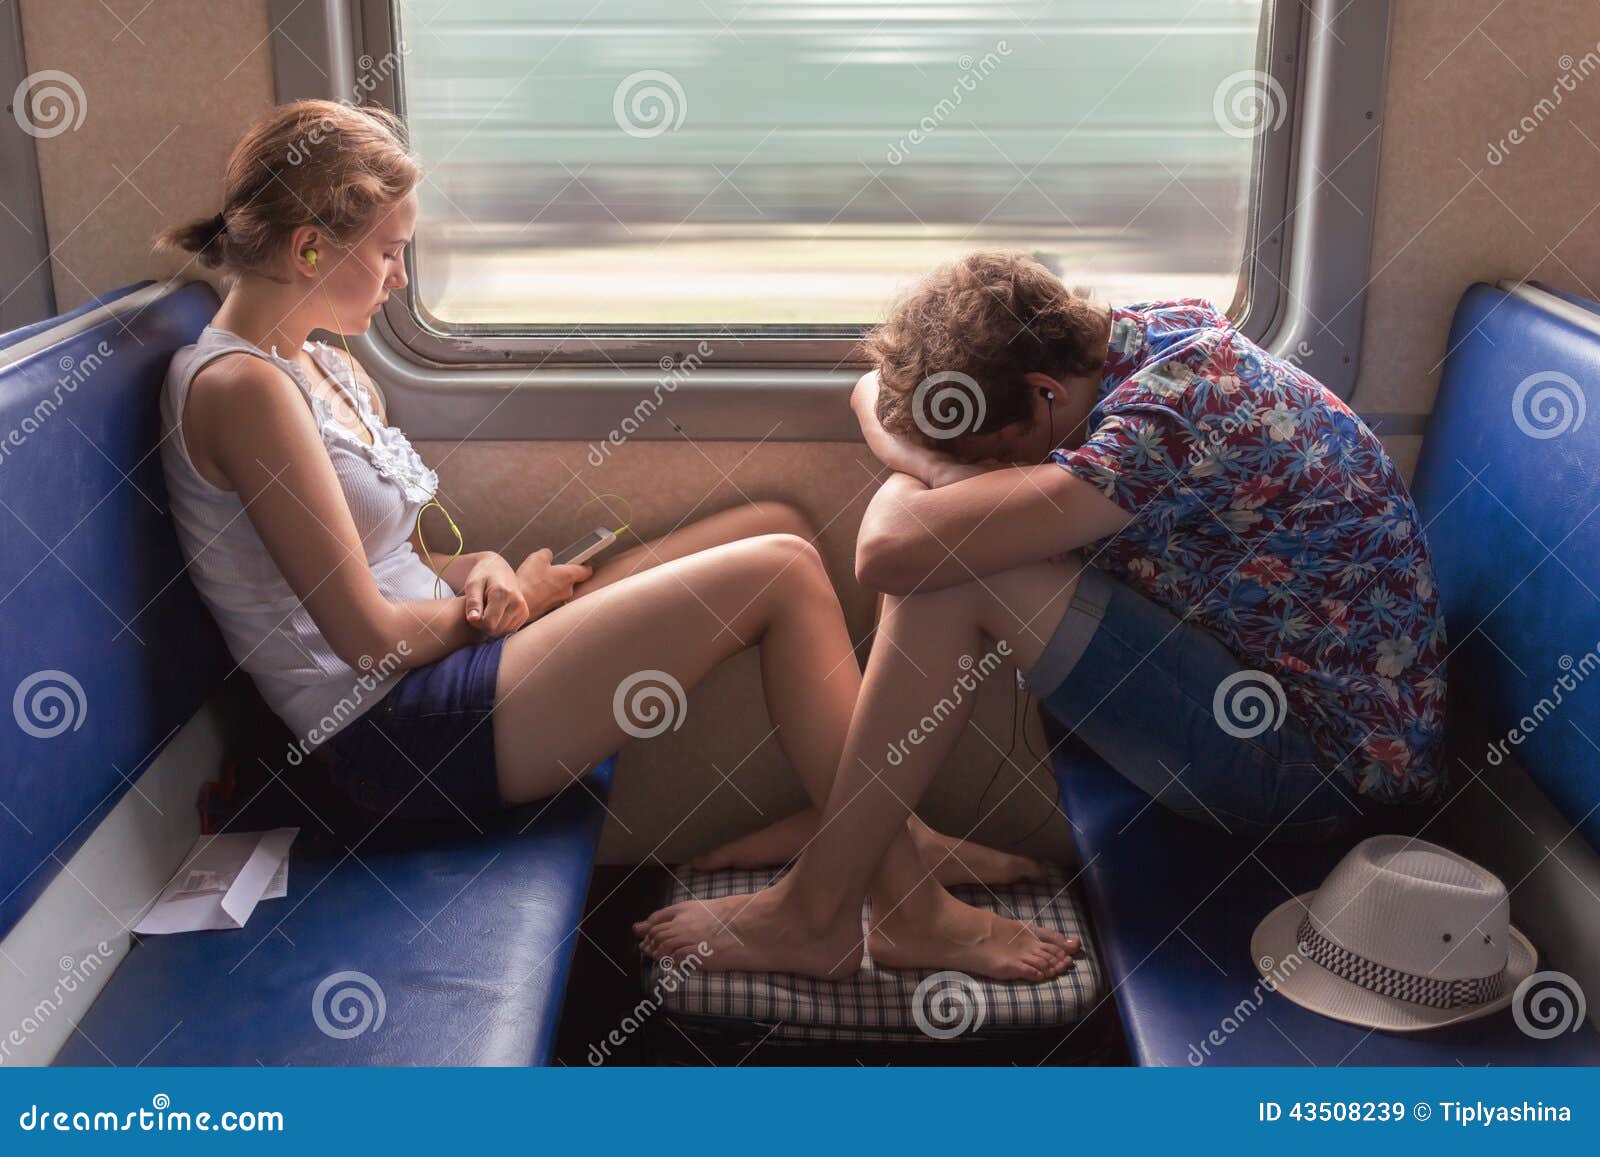 Жена изменила в поезде. Девушка в электричке. Девушка сидит в электричке. Босая в поезде. Две девушки в электричке.